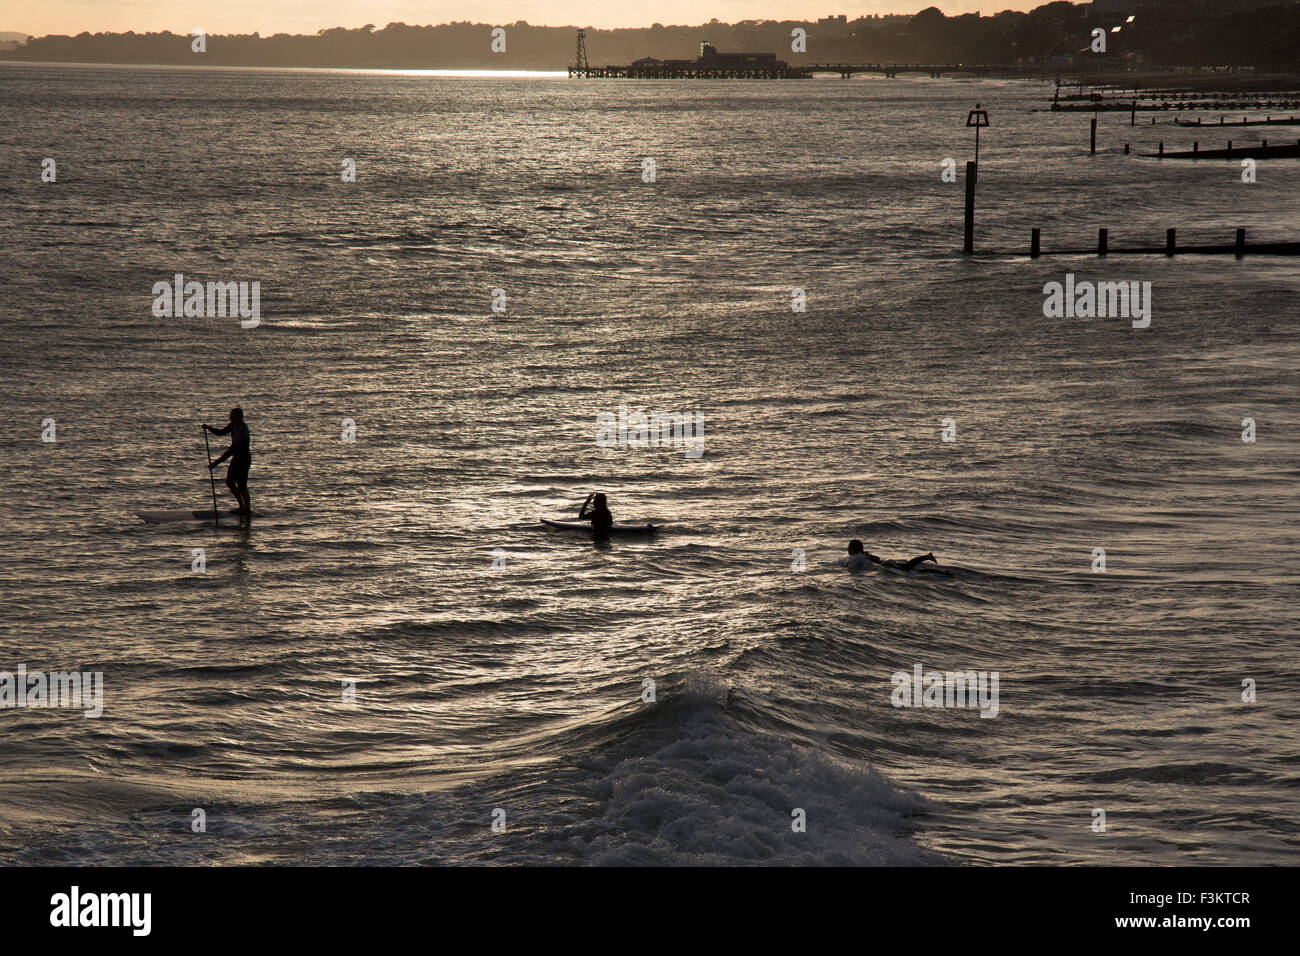 Un homme sur un paddle board et deux surfeurs dans la mer à Bournemouth, Angleterre. Prises en début de soirée la lumière. Banque D'Images